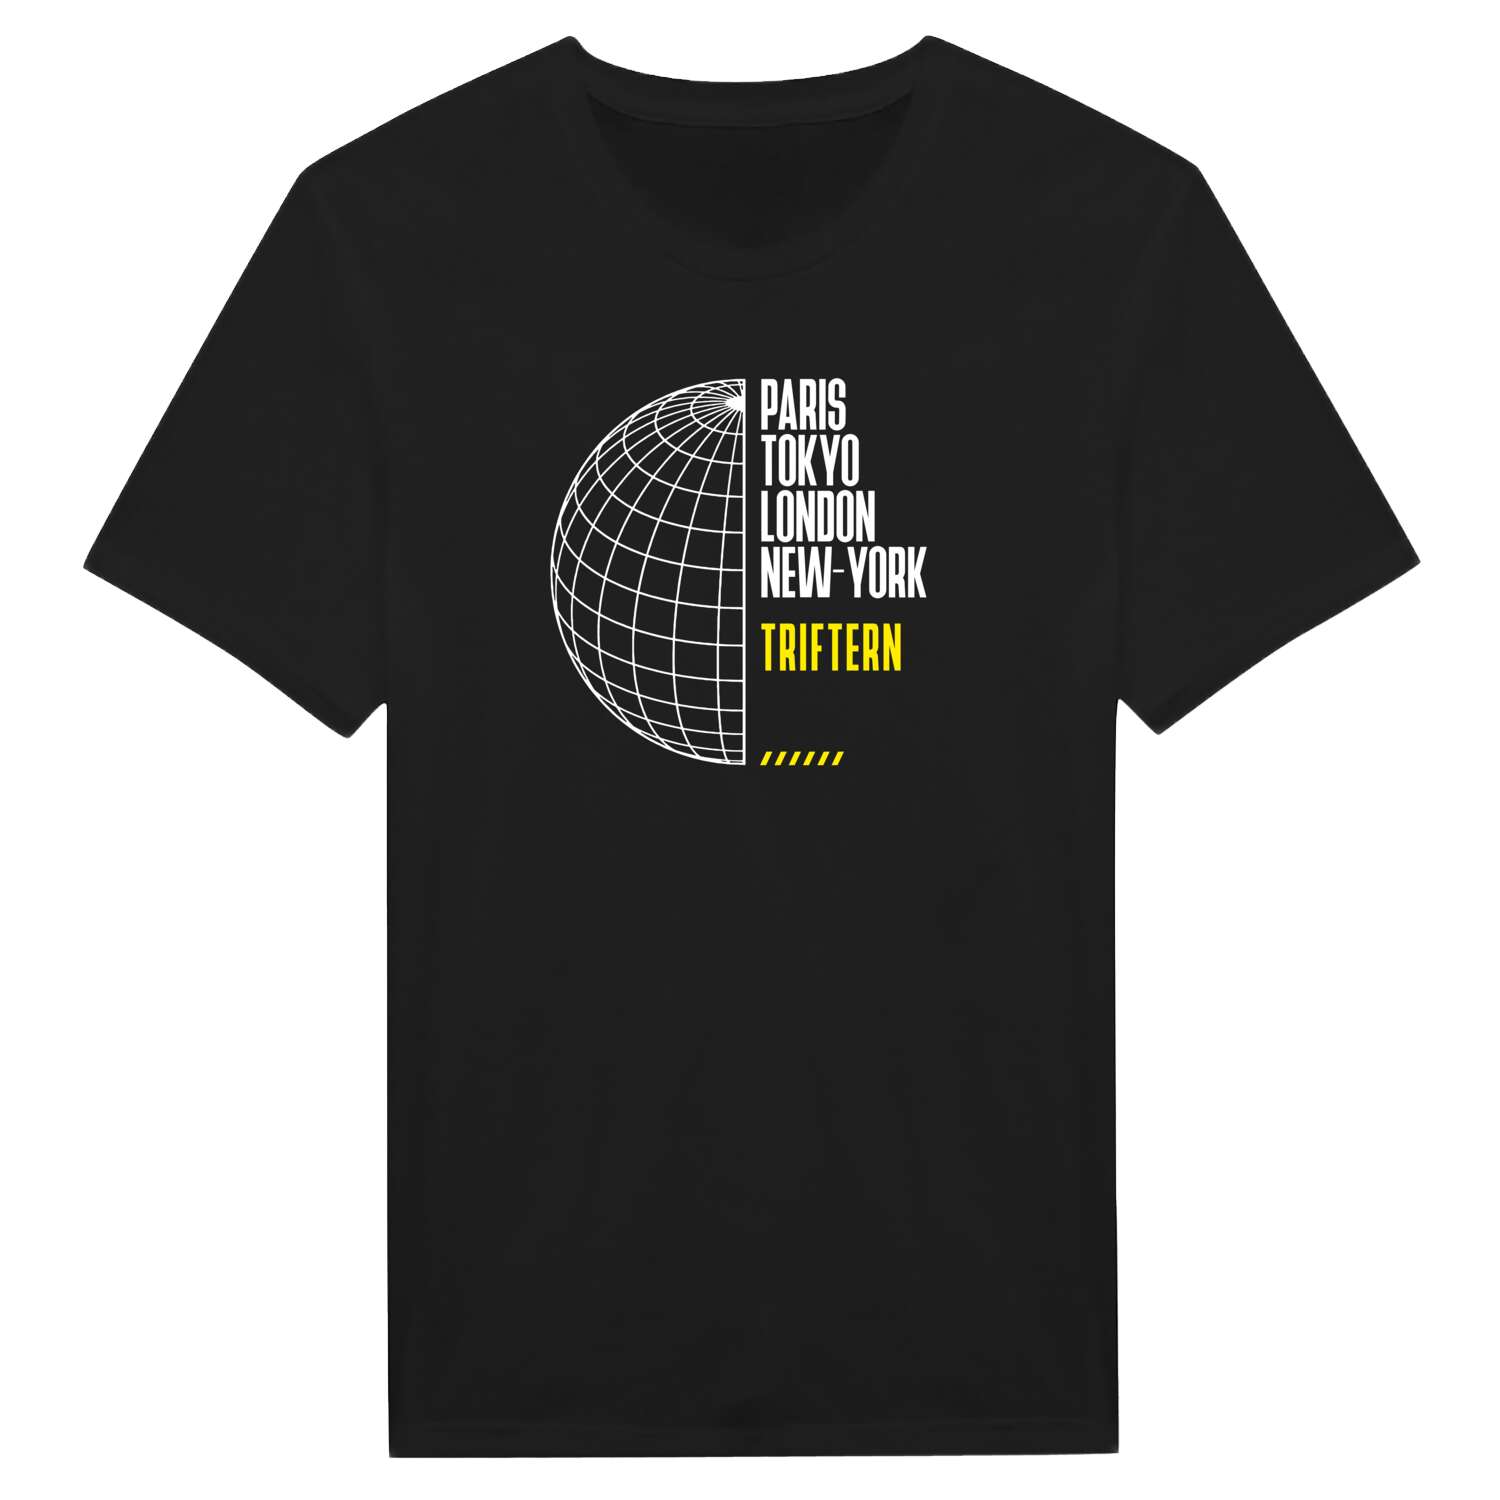 Triftern T-Shirt »Paris Tokyo London«